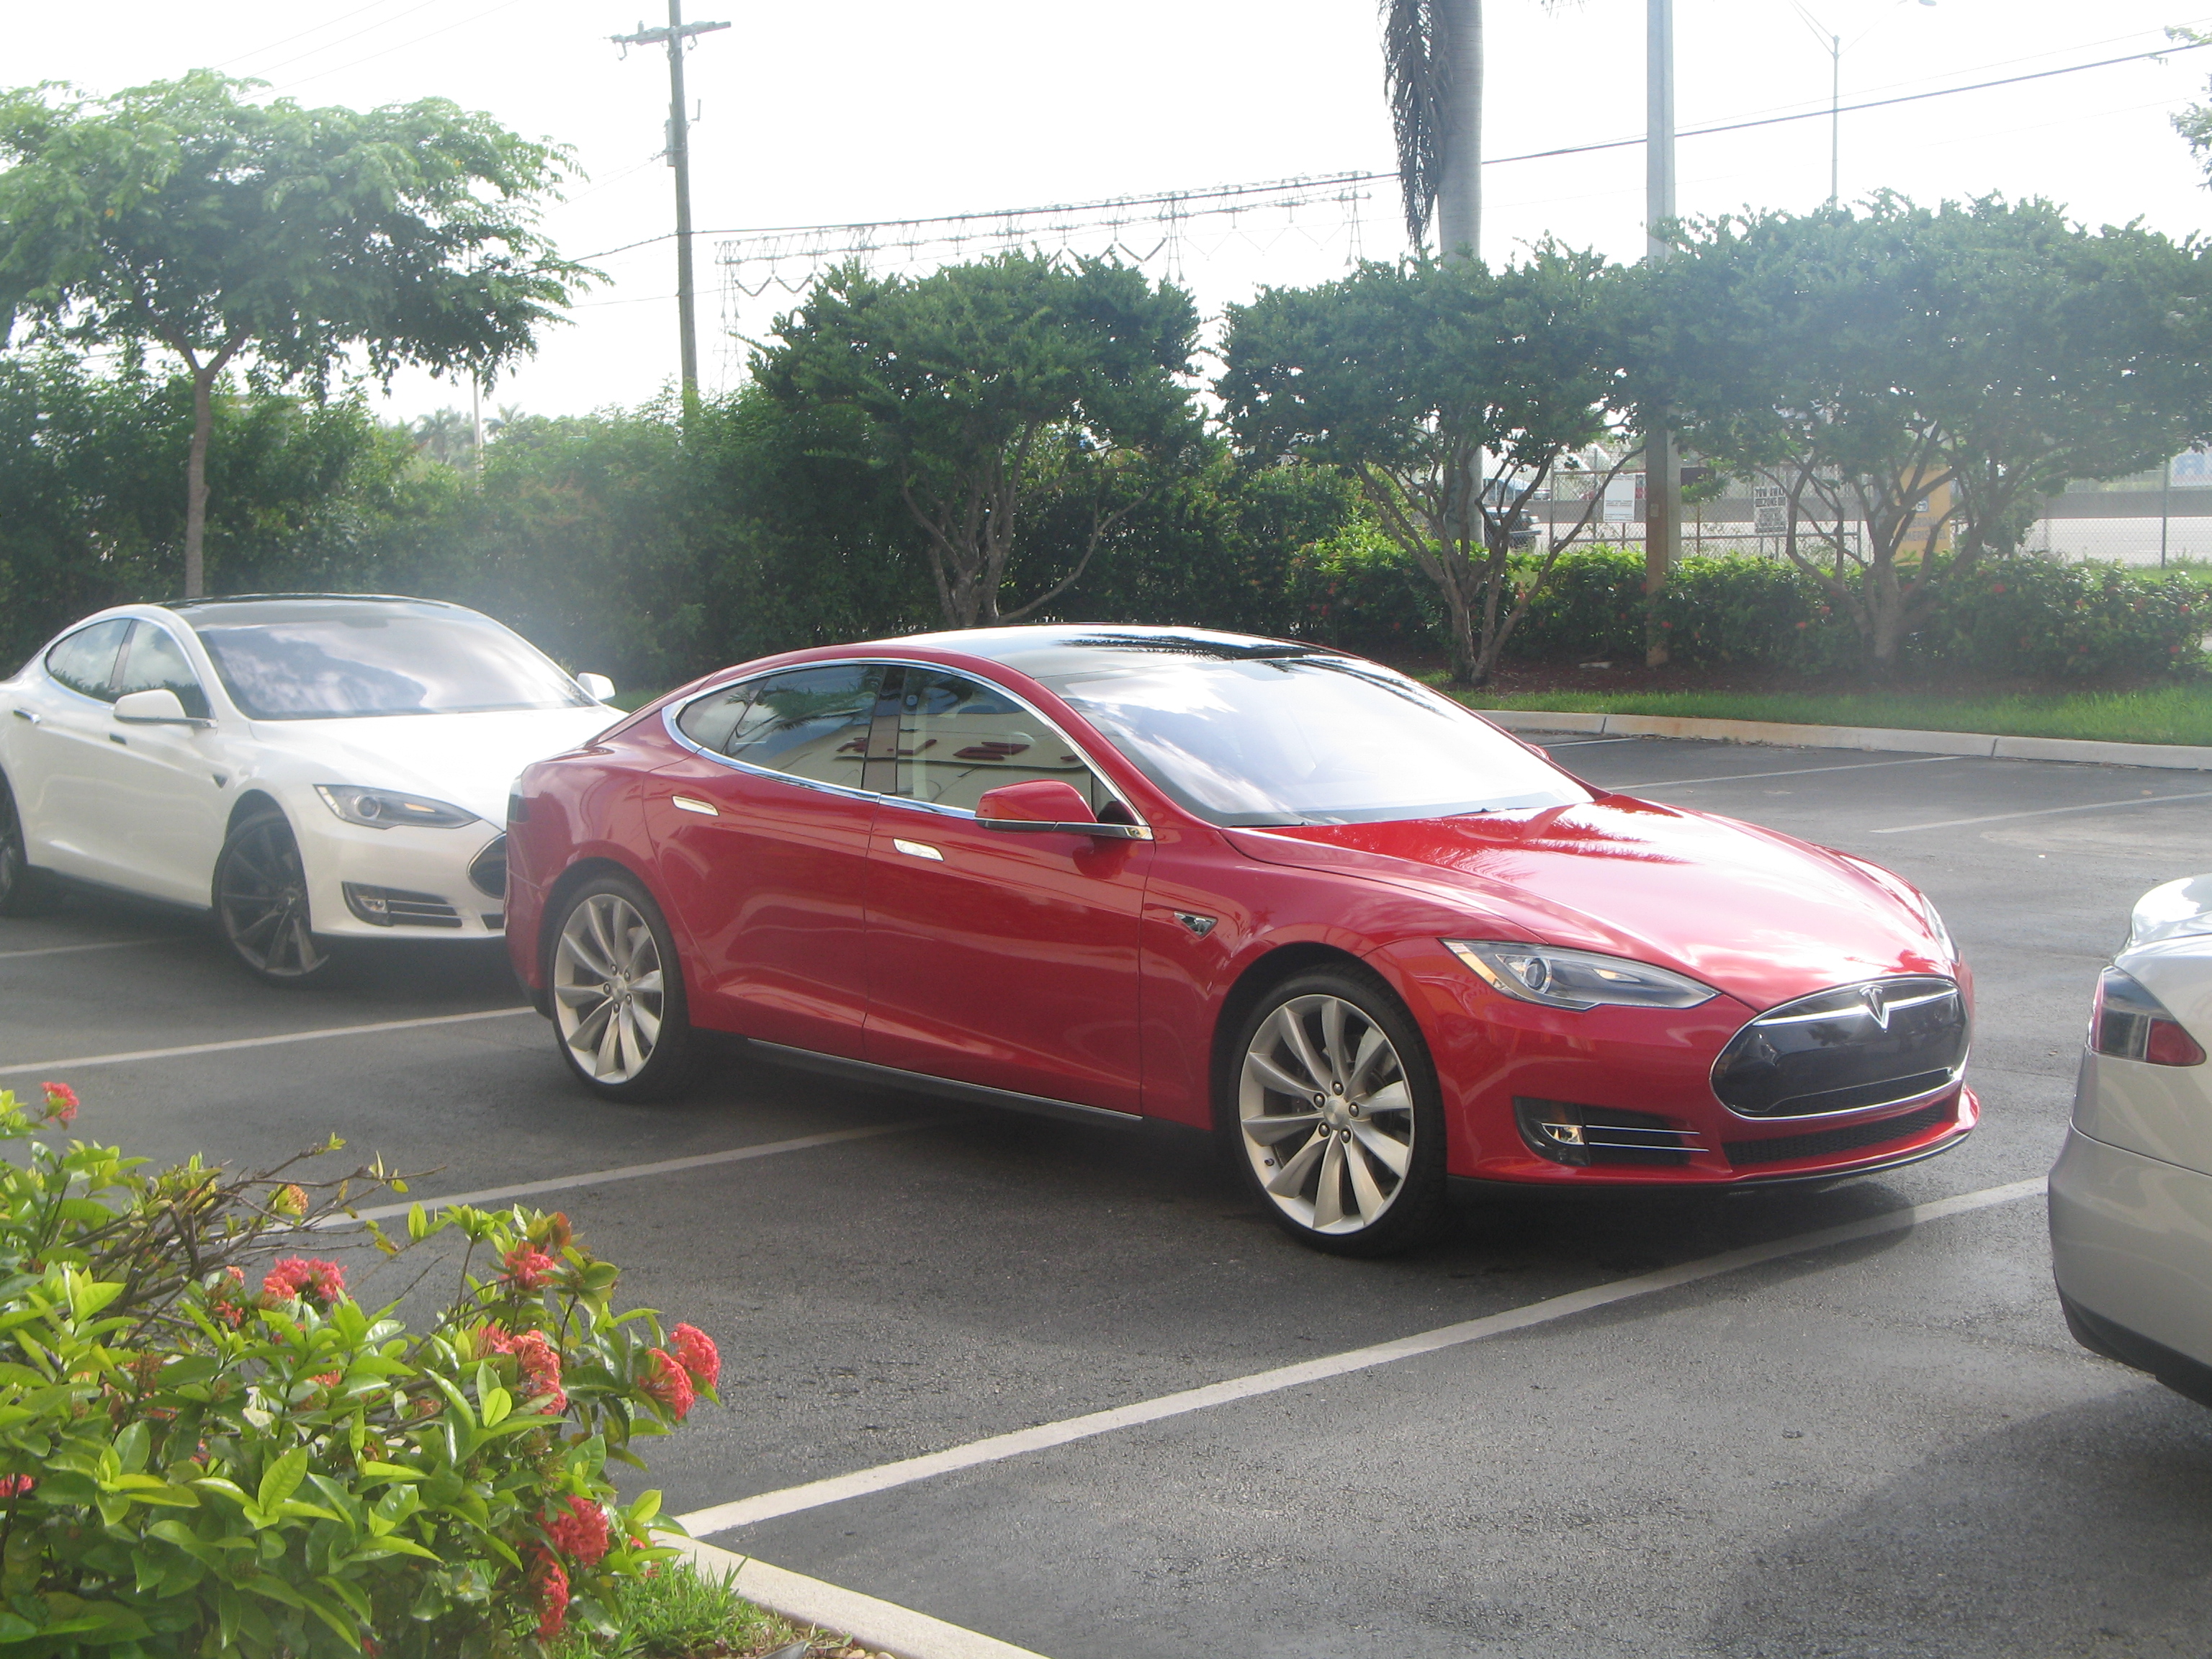 Tesla Test Drive Dania Beach July 2012 009.JPG